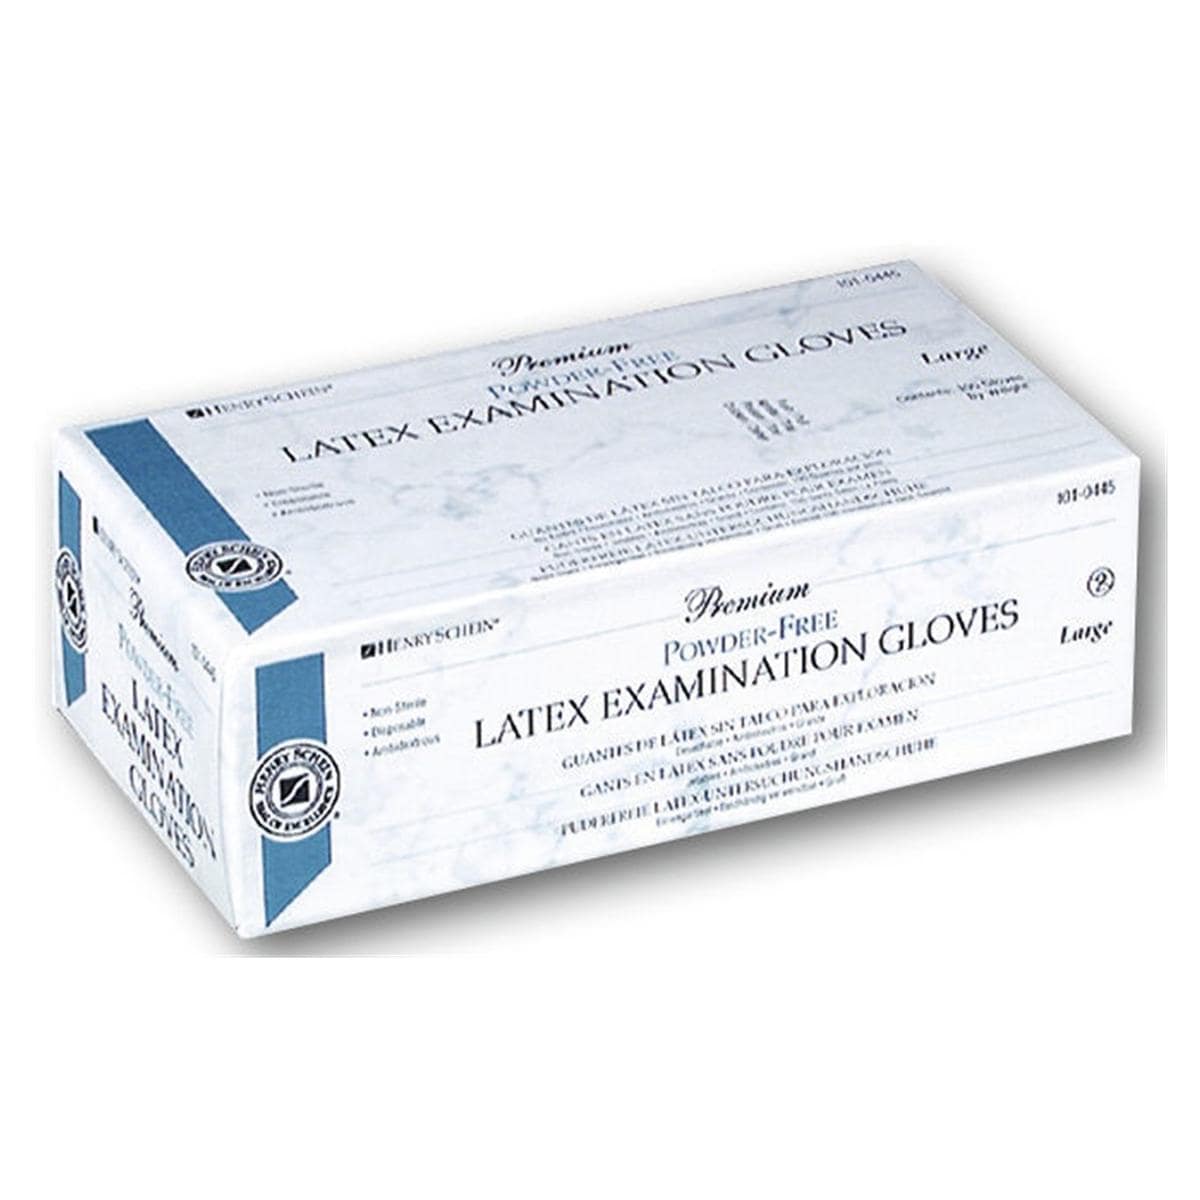 Premium Latex Examination Gloves - XS - 100 pcs